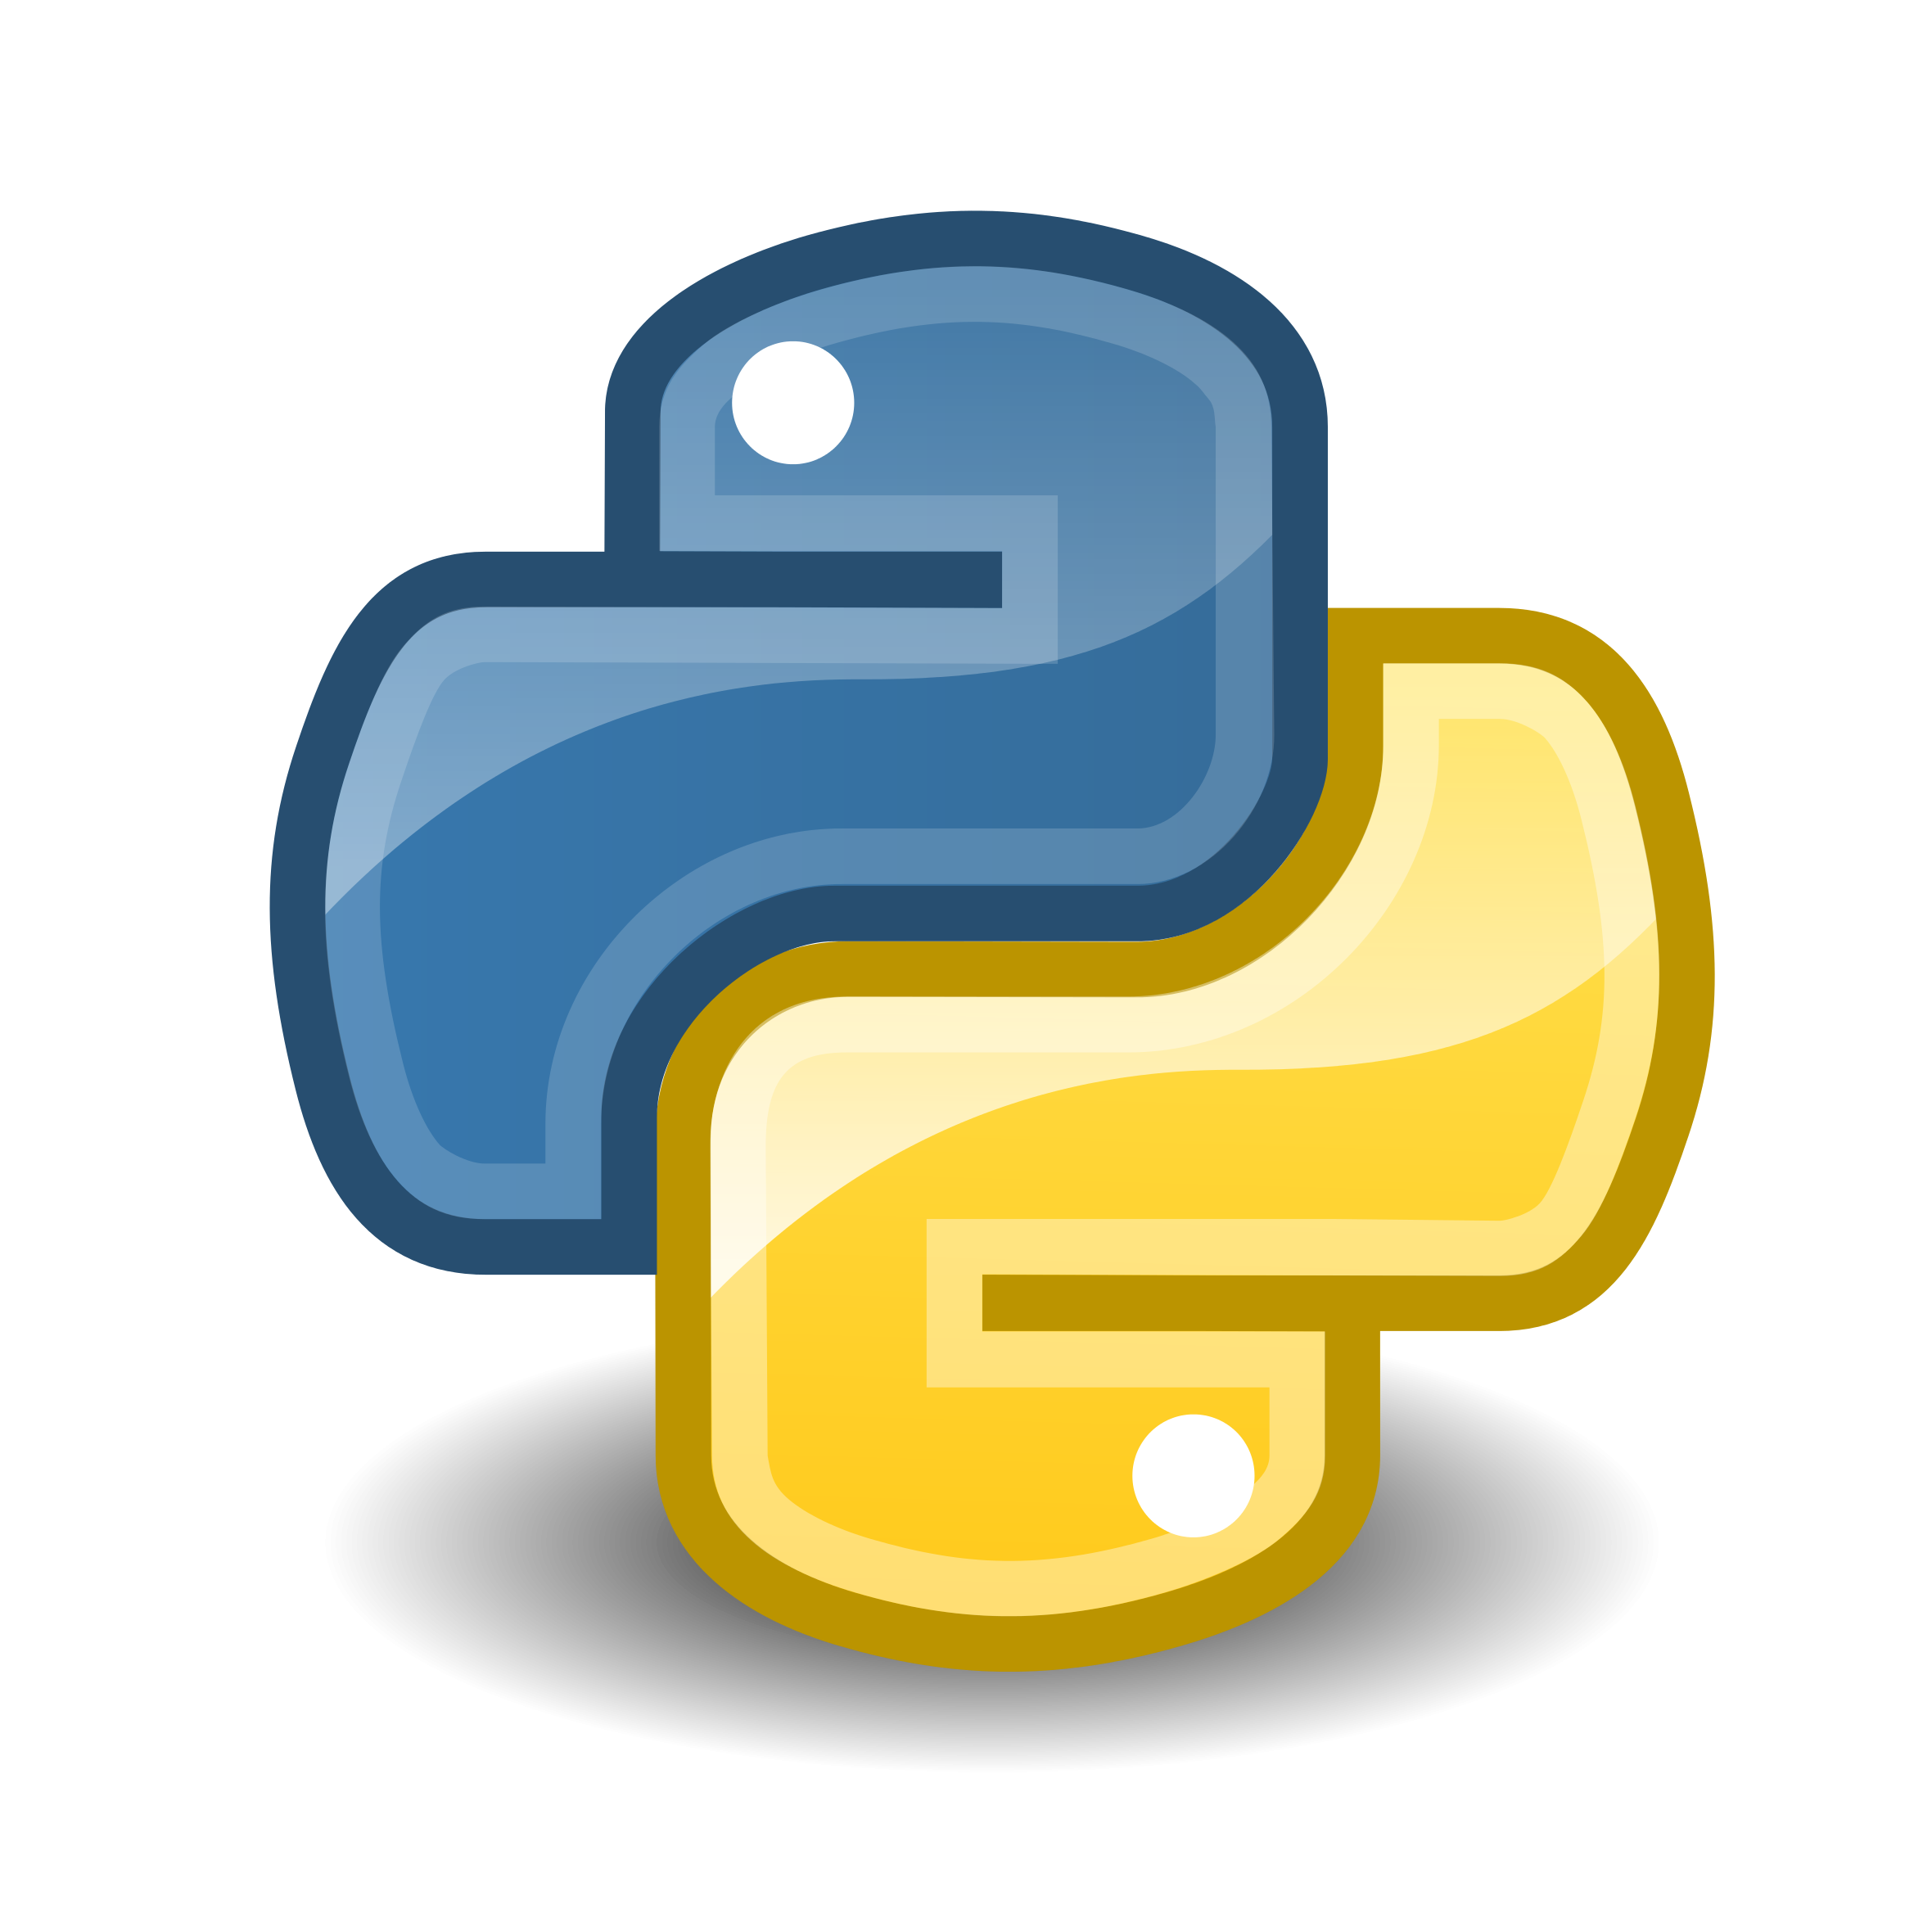 Python Logo Symbol PNG HQ Image Transparent pngteam.com